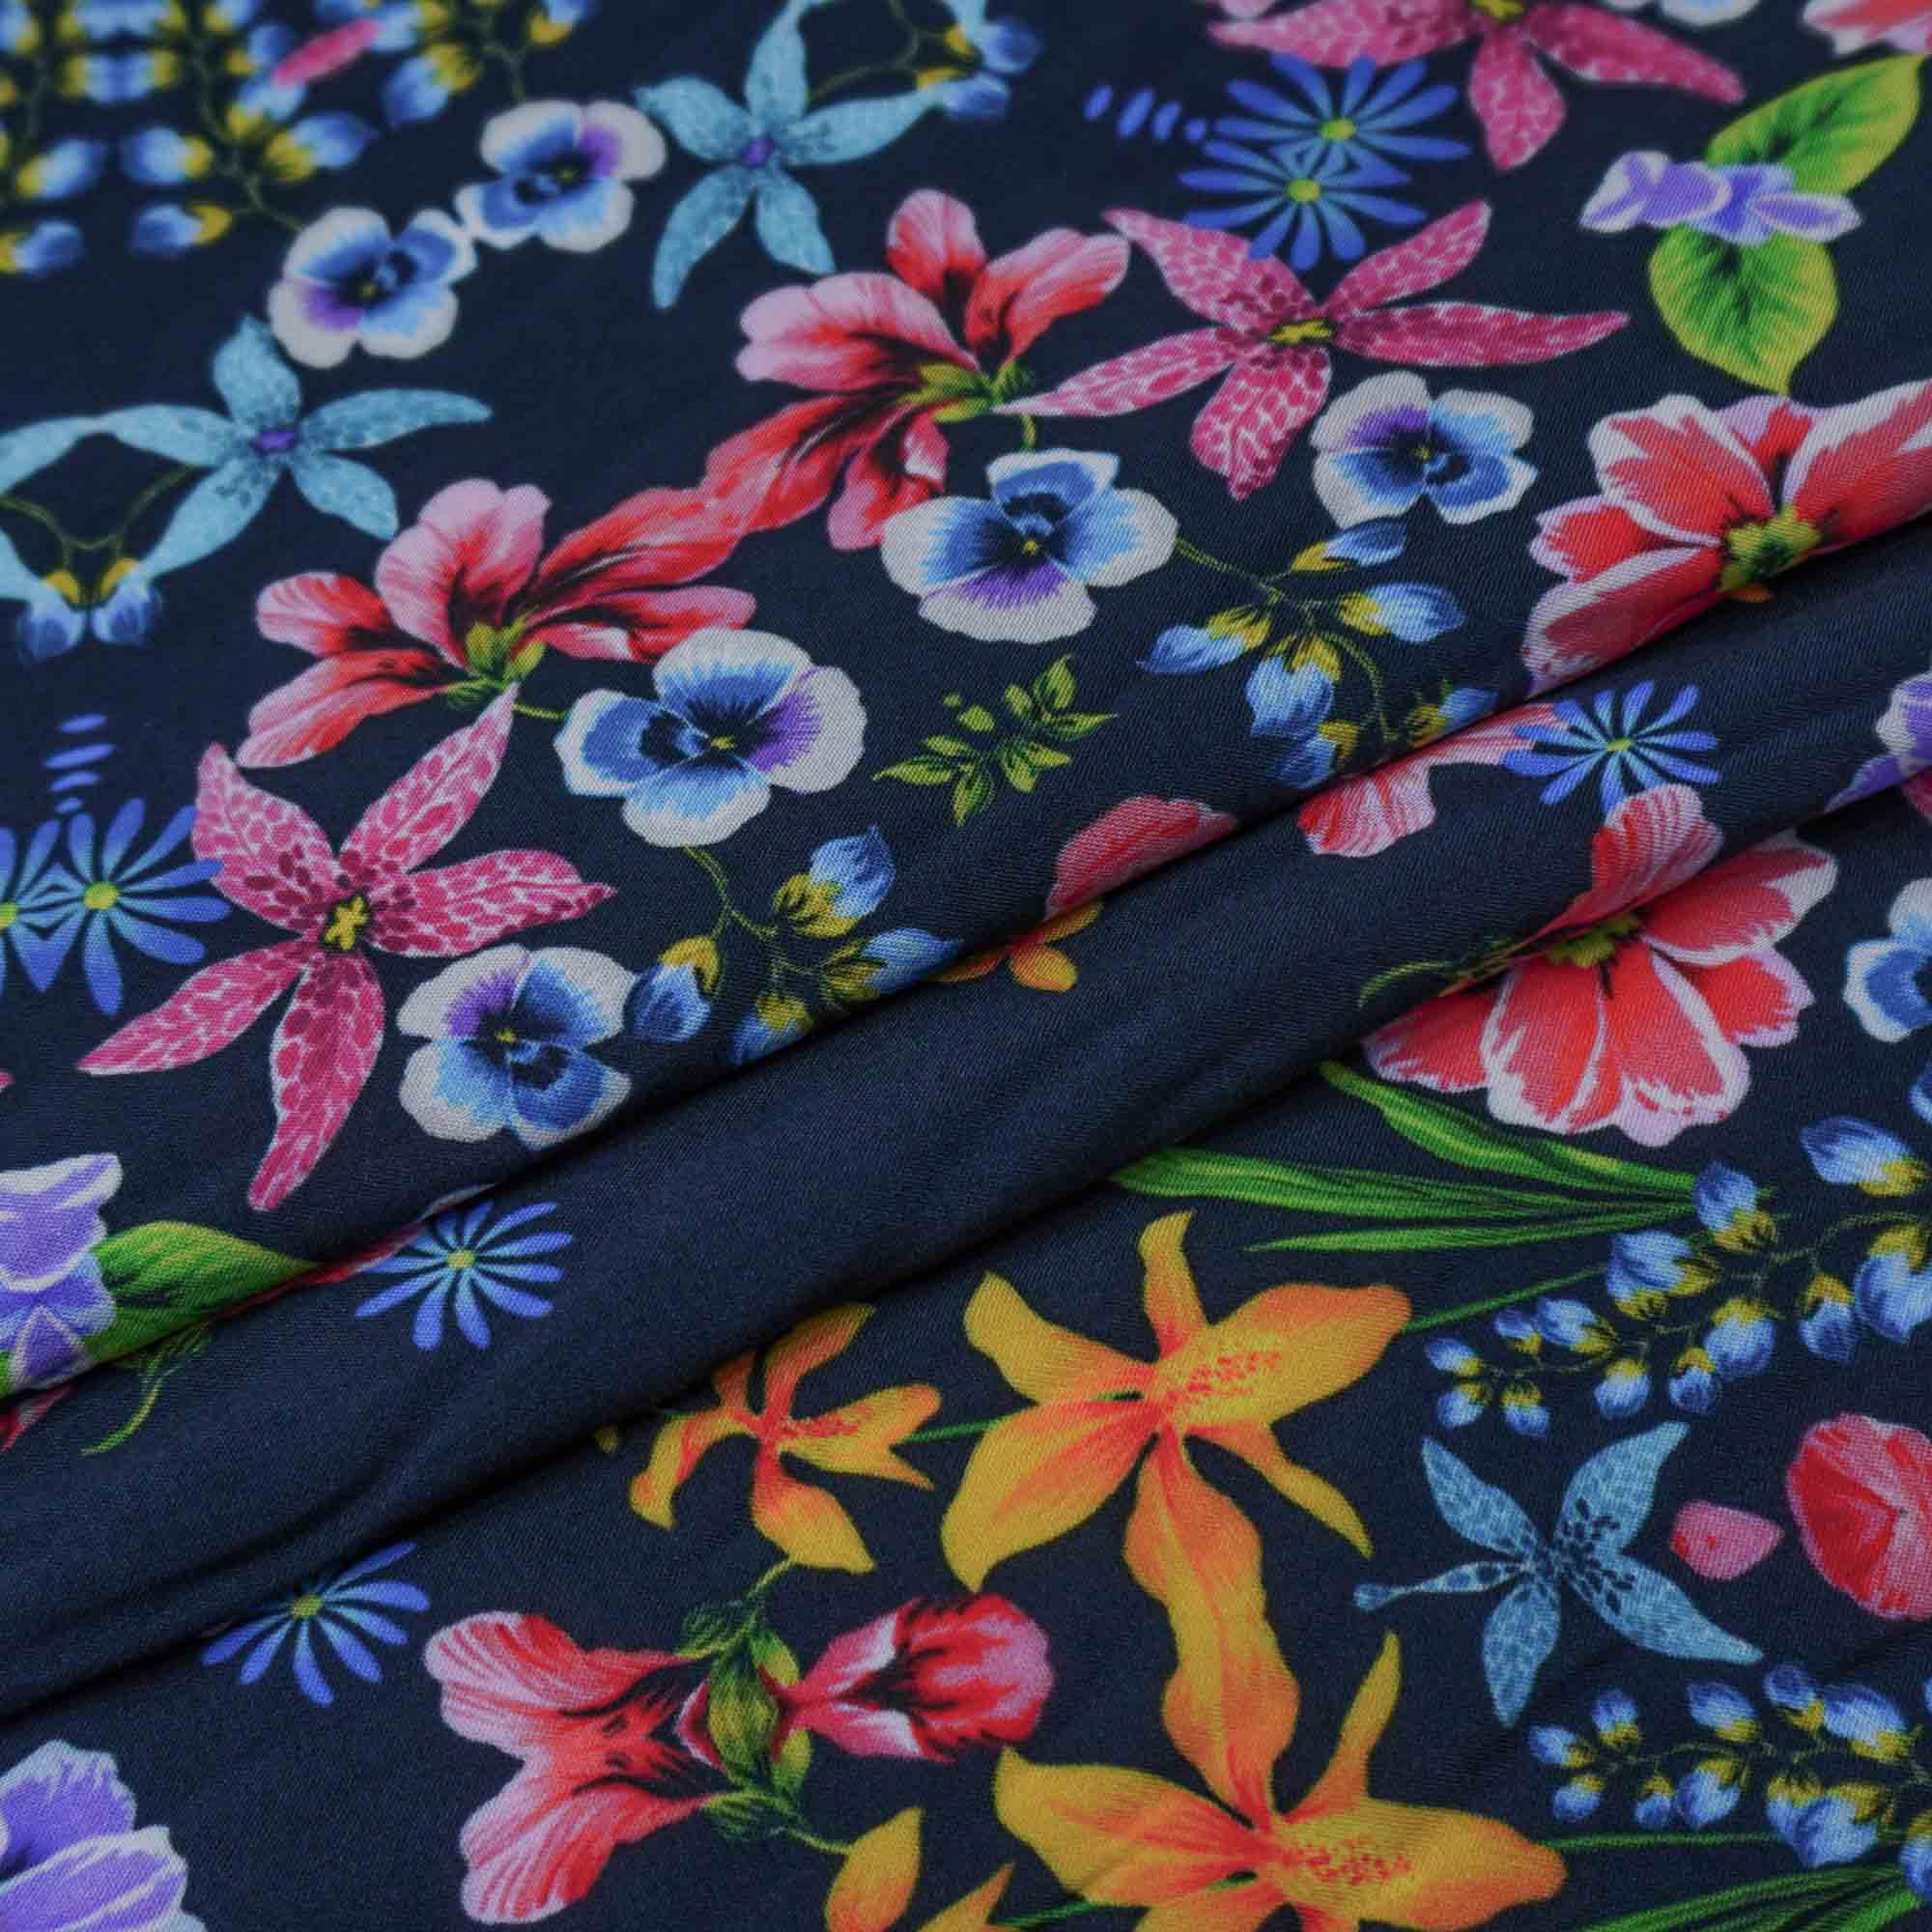 Tecido viscose azul noite estampado floral (tecido italiano legítimo)